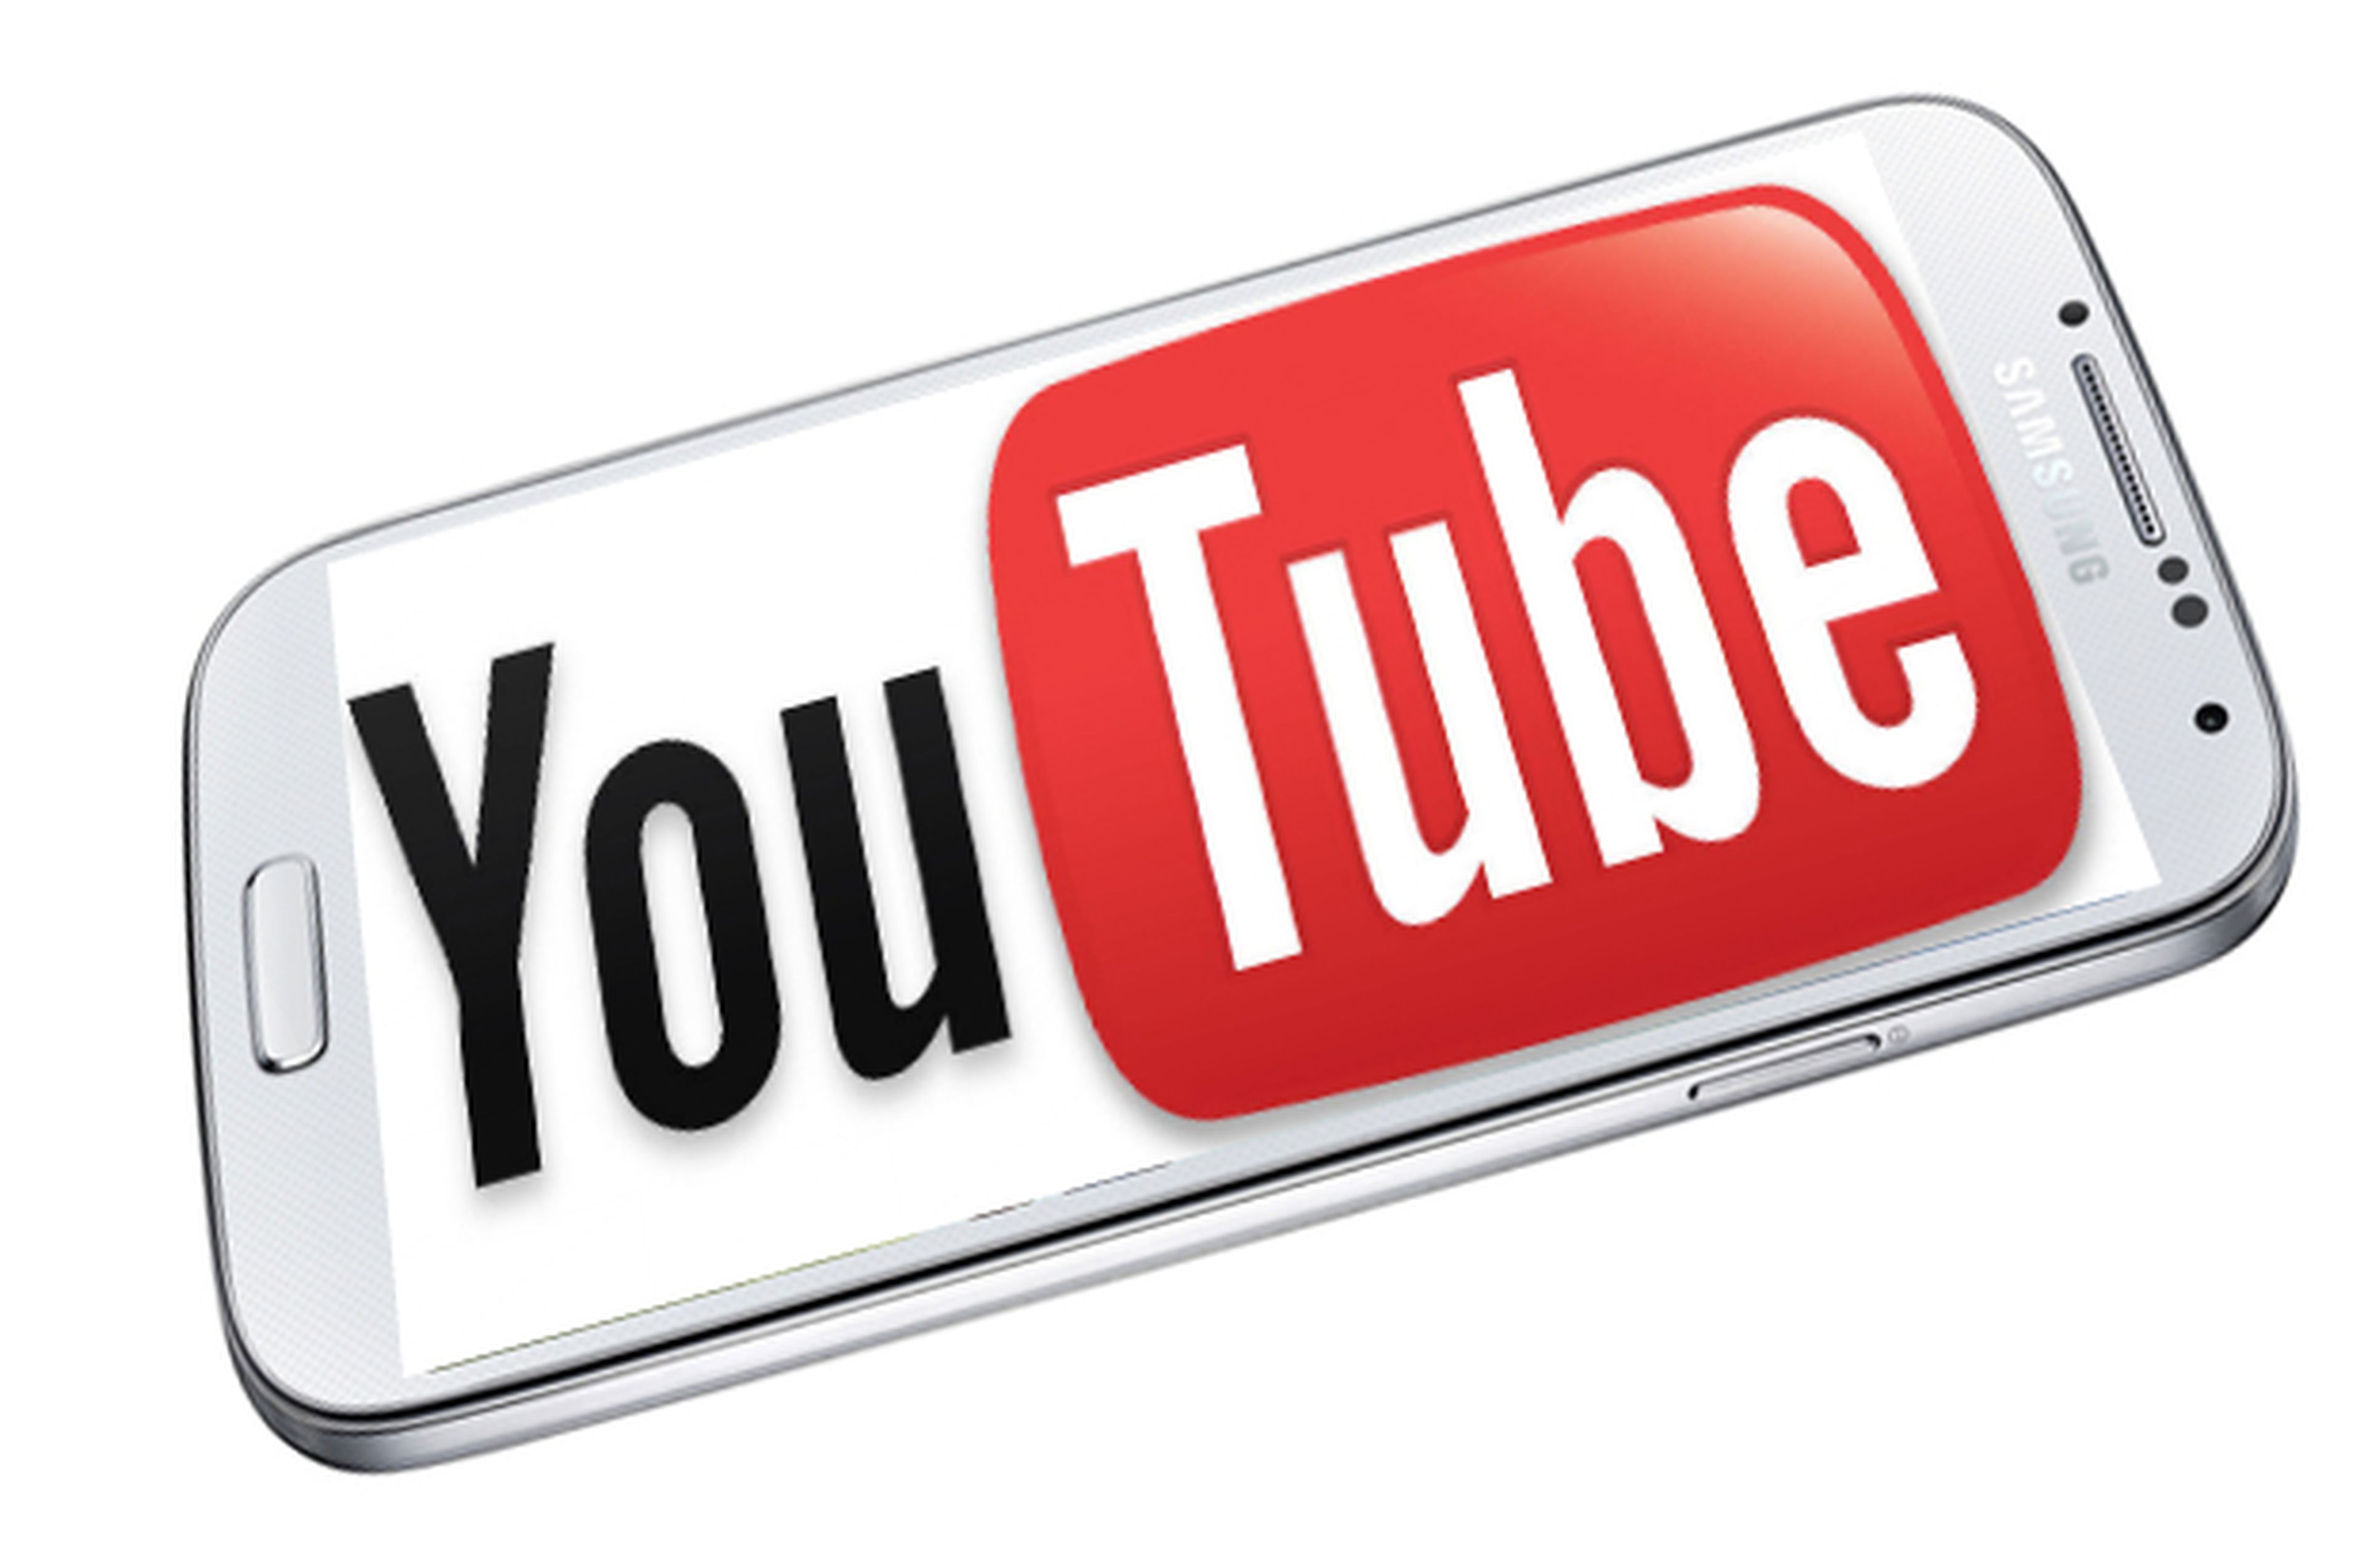 YouTube permitirá ver vídeos offline en dispositivos móviles